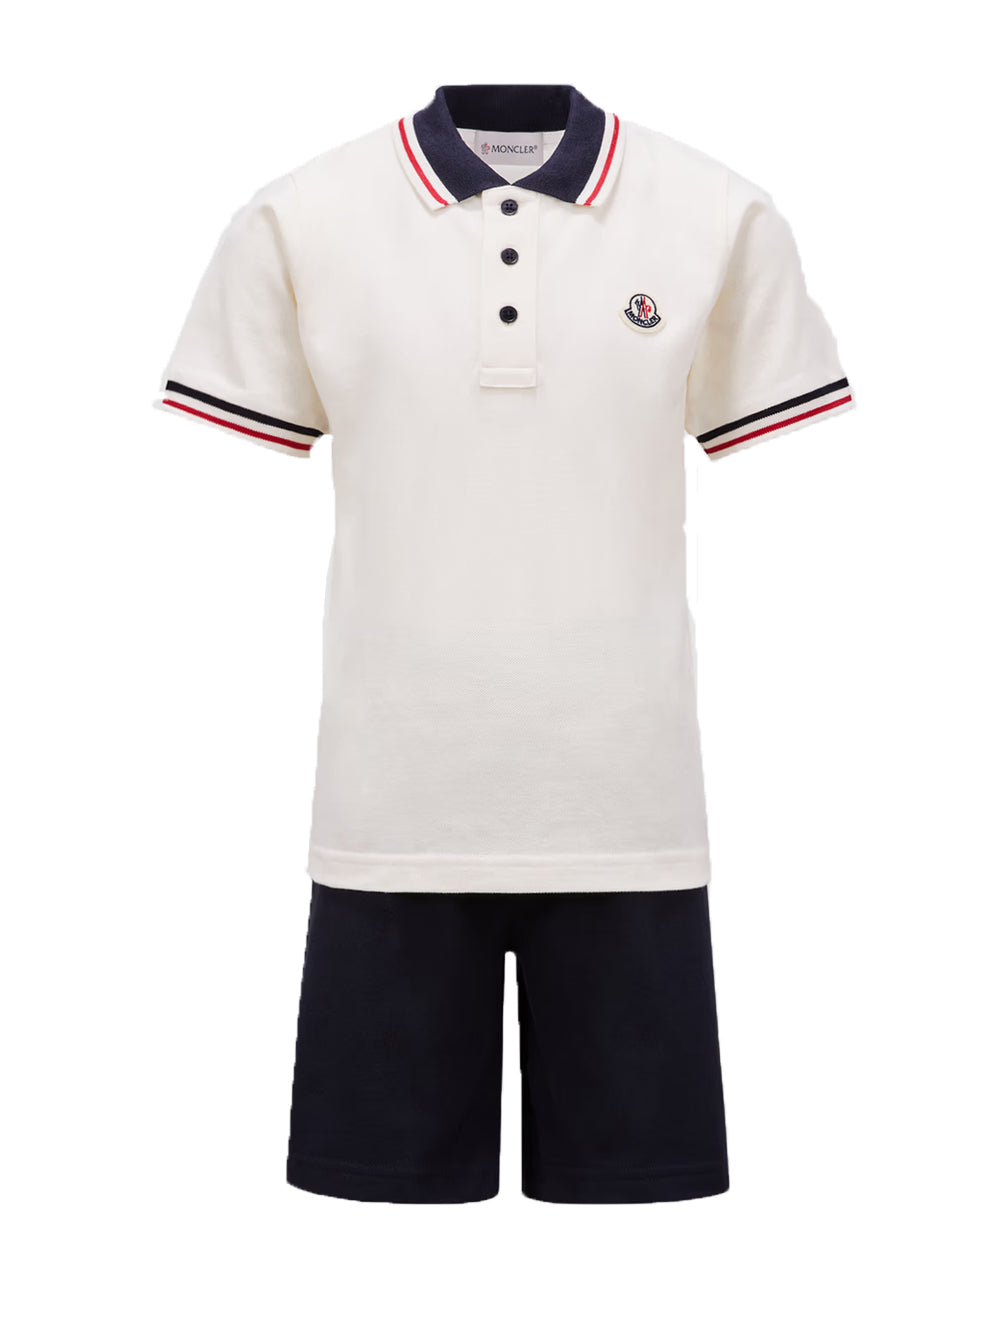 MONCLER KIDS Boys Logo Polo Shirt Set White/Blue